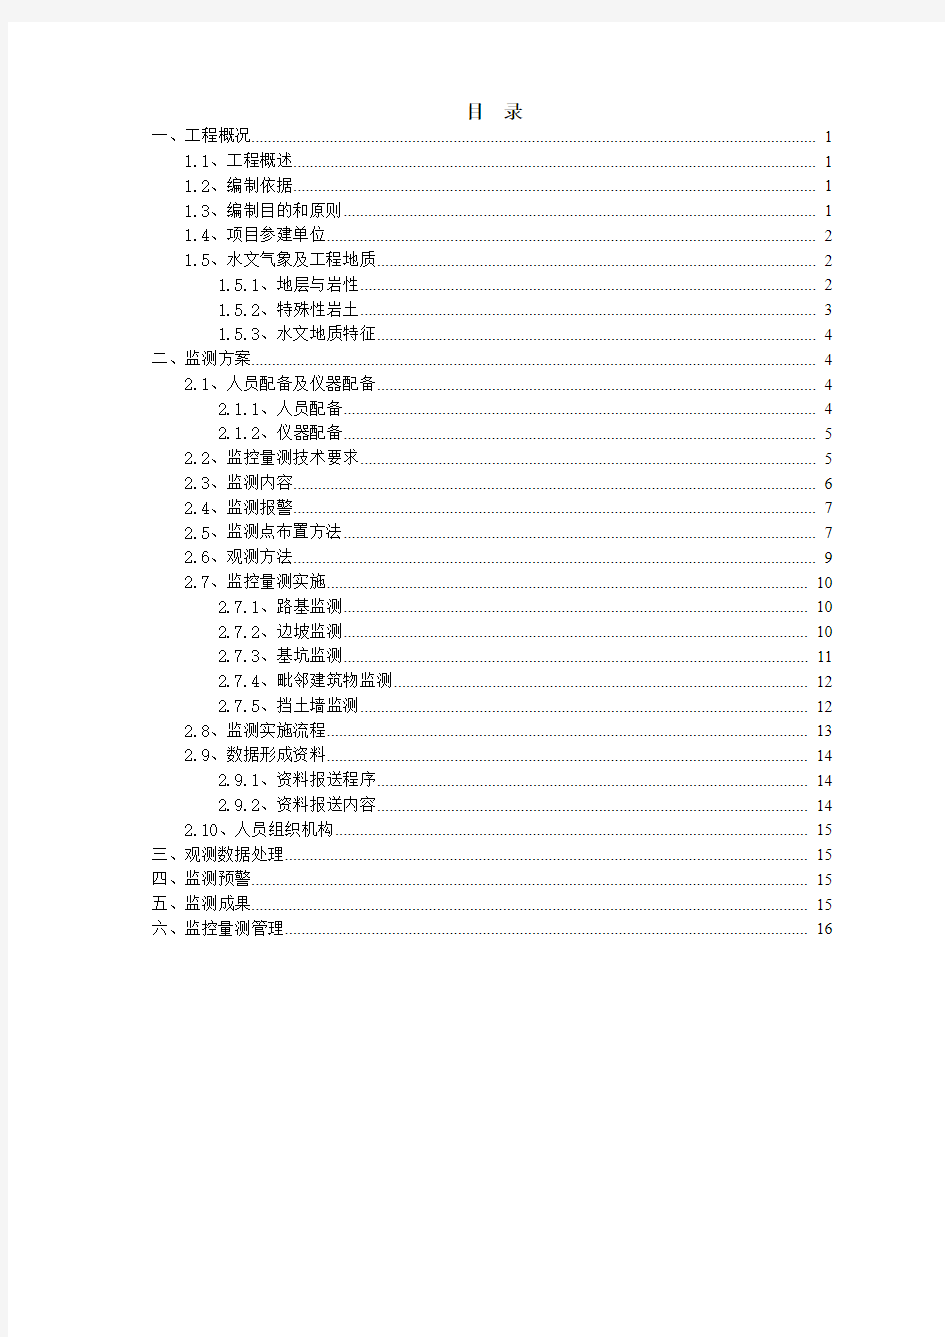 广州镇龙车辆段施工I标工程监控测量方案 (2)